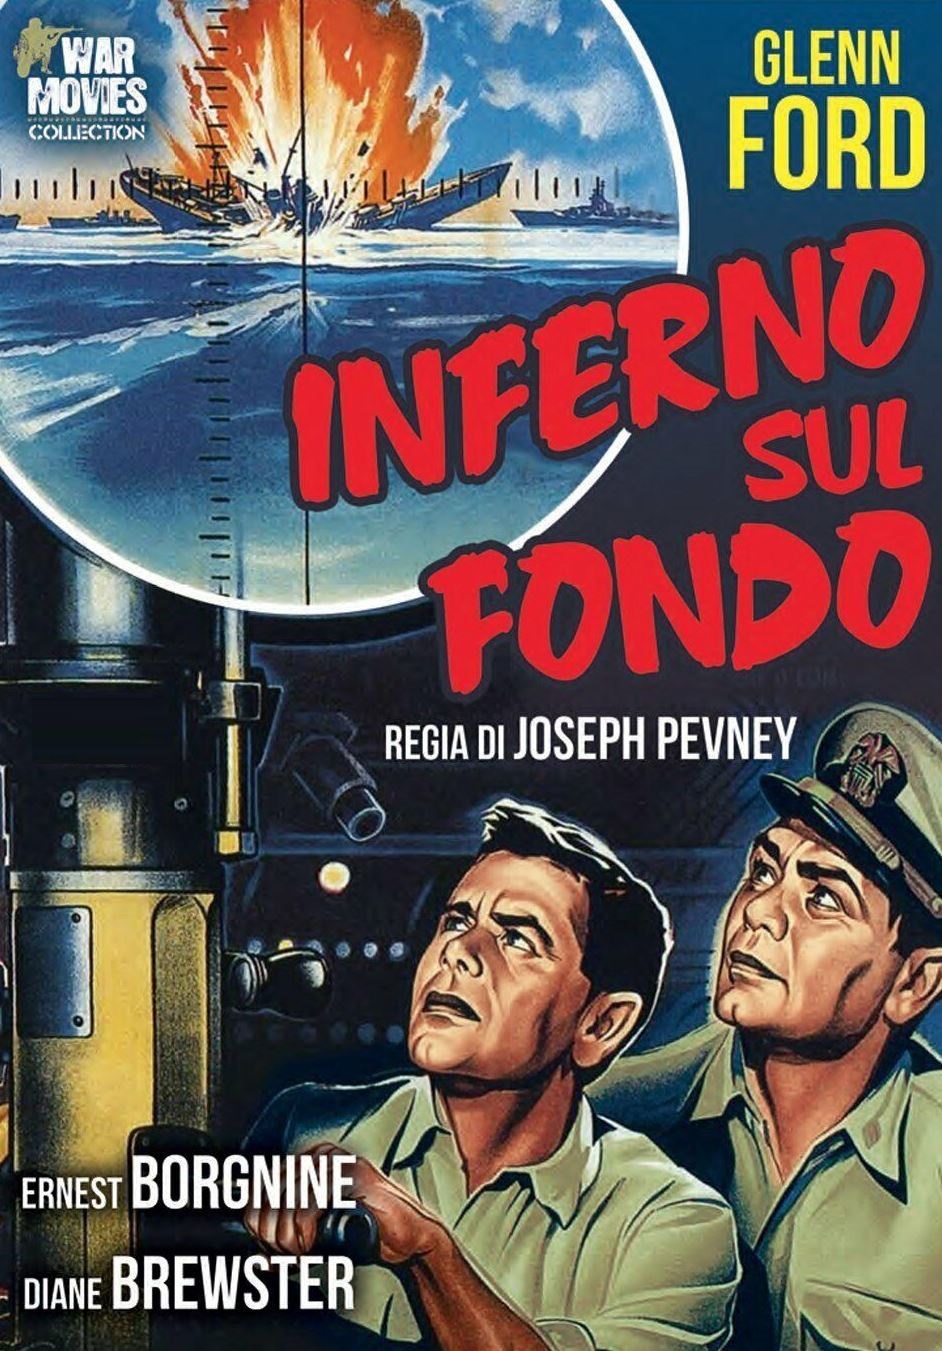 Inferno sul fondo (1958)